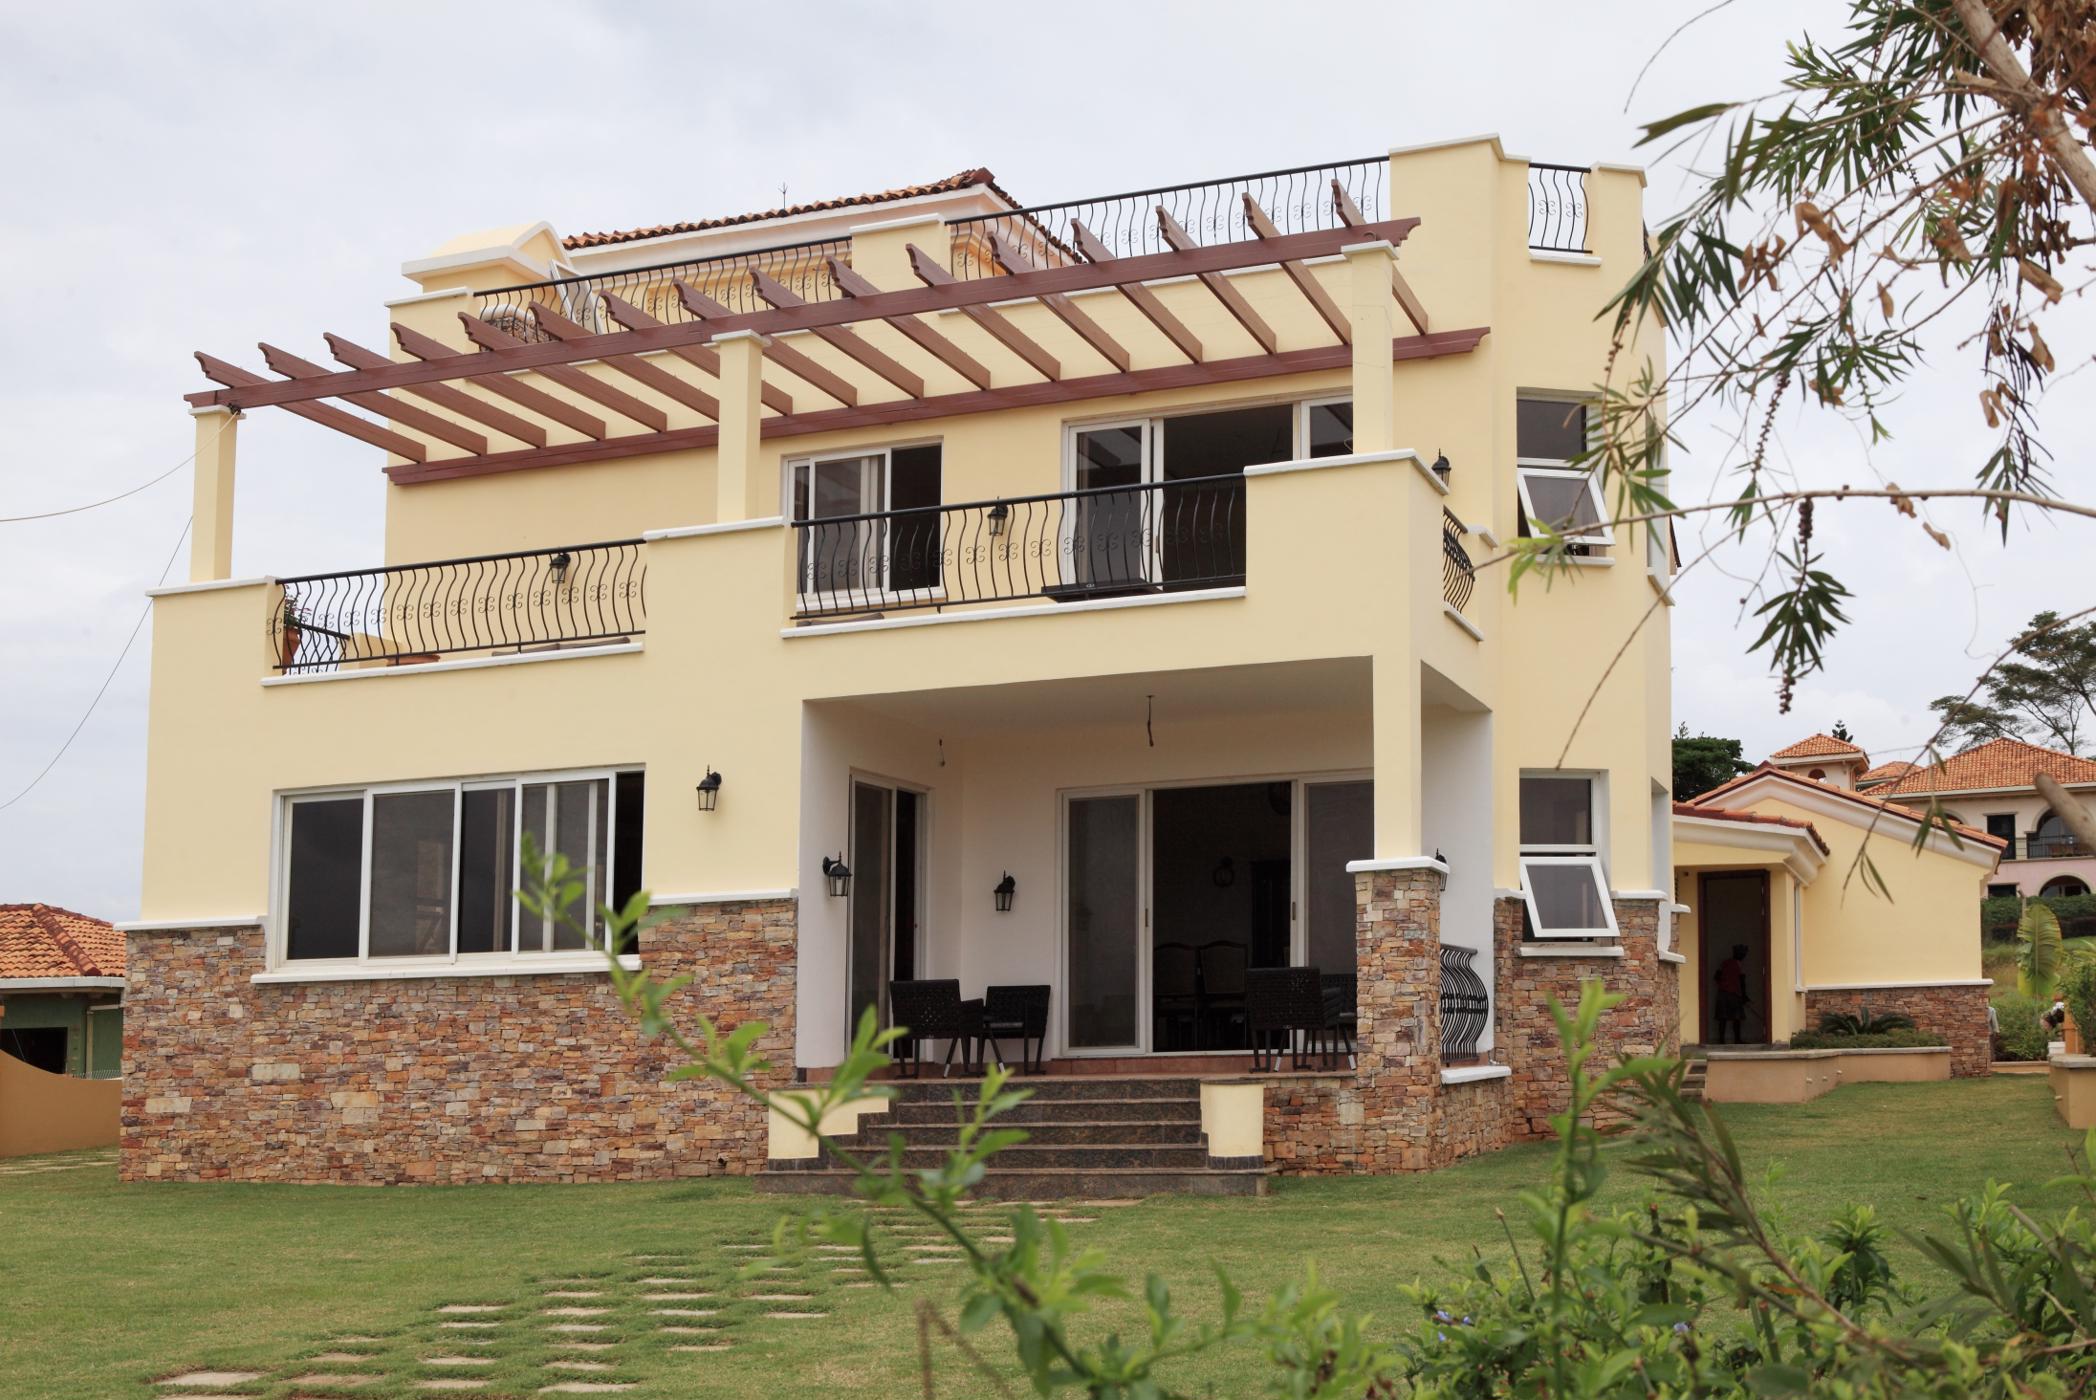 4 bedroom house for sale in Kampala (Uganda)